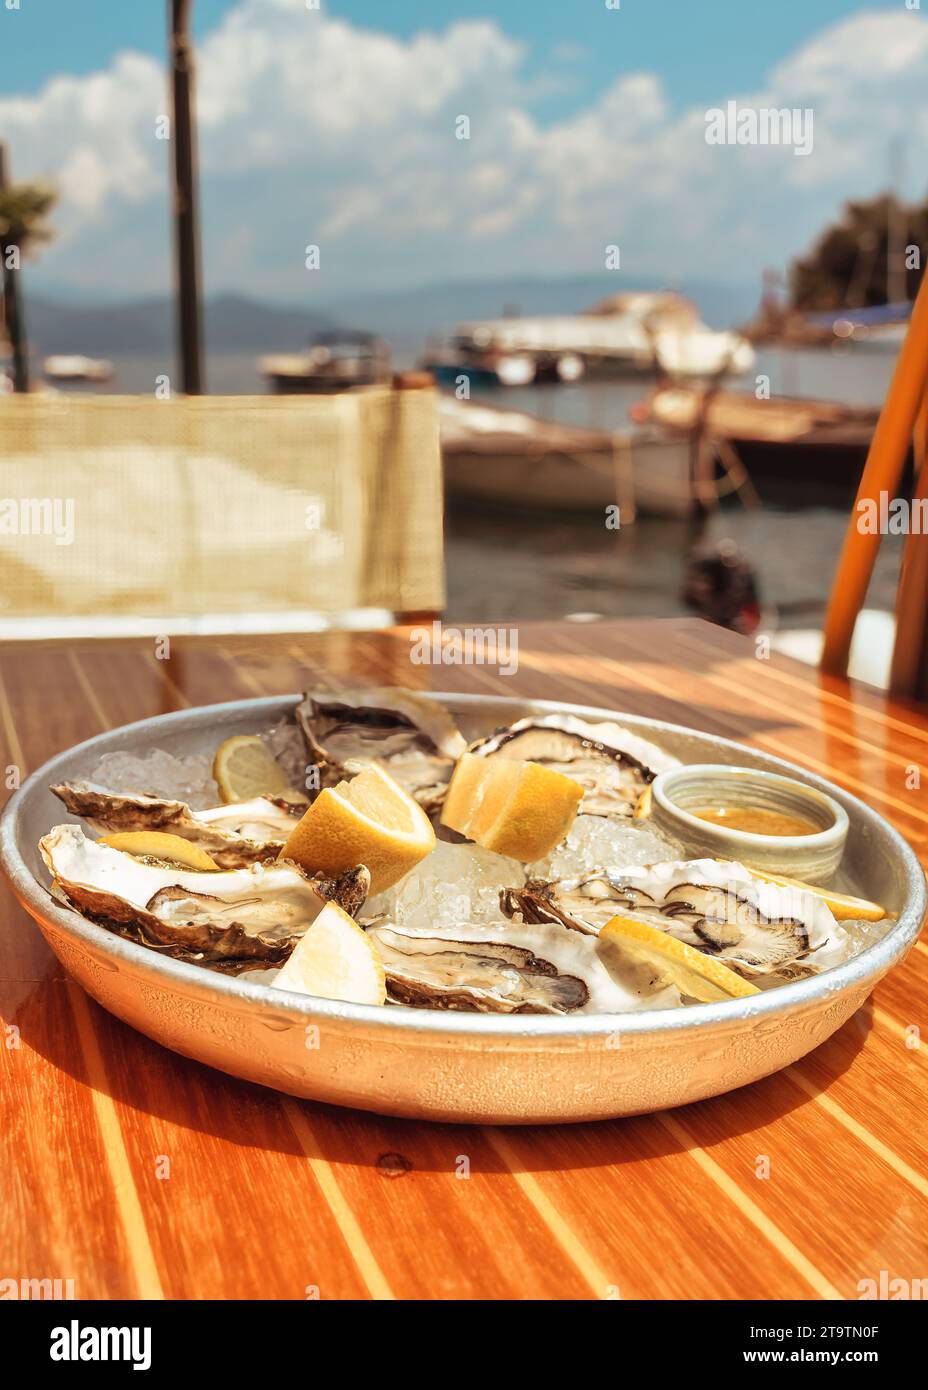 Portofino, dove ogni piatto è una sinfonia di sapori mediterranei. Ho apprezzato il mio palato con cibo fresco, pesto aromatico e olio d'oliva locale. Foto Stock